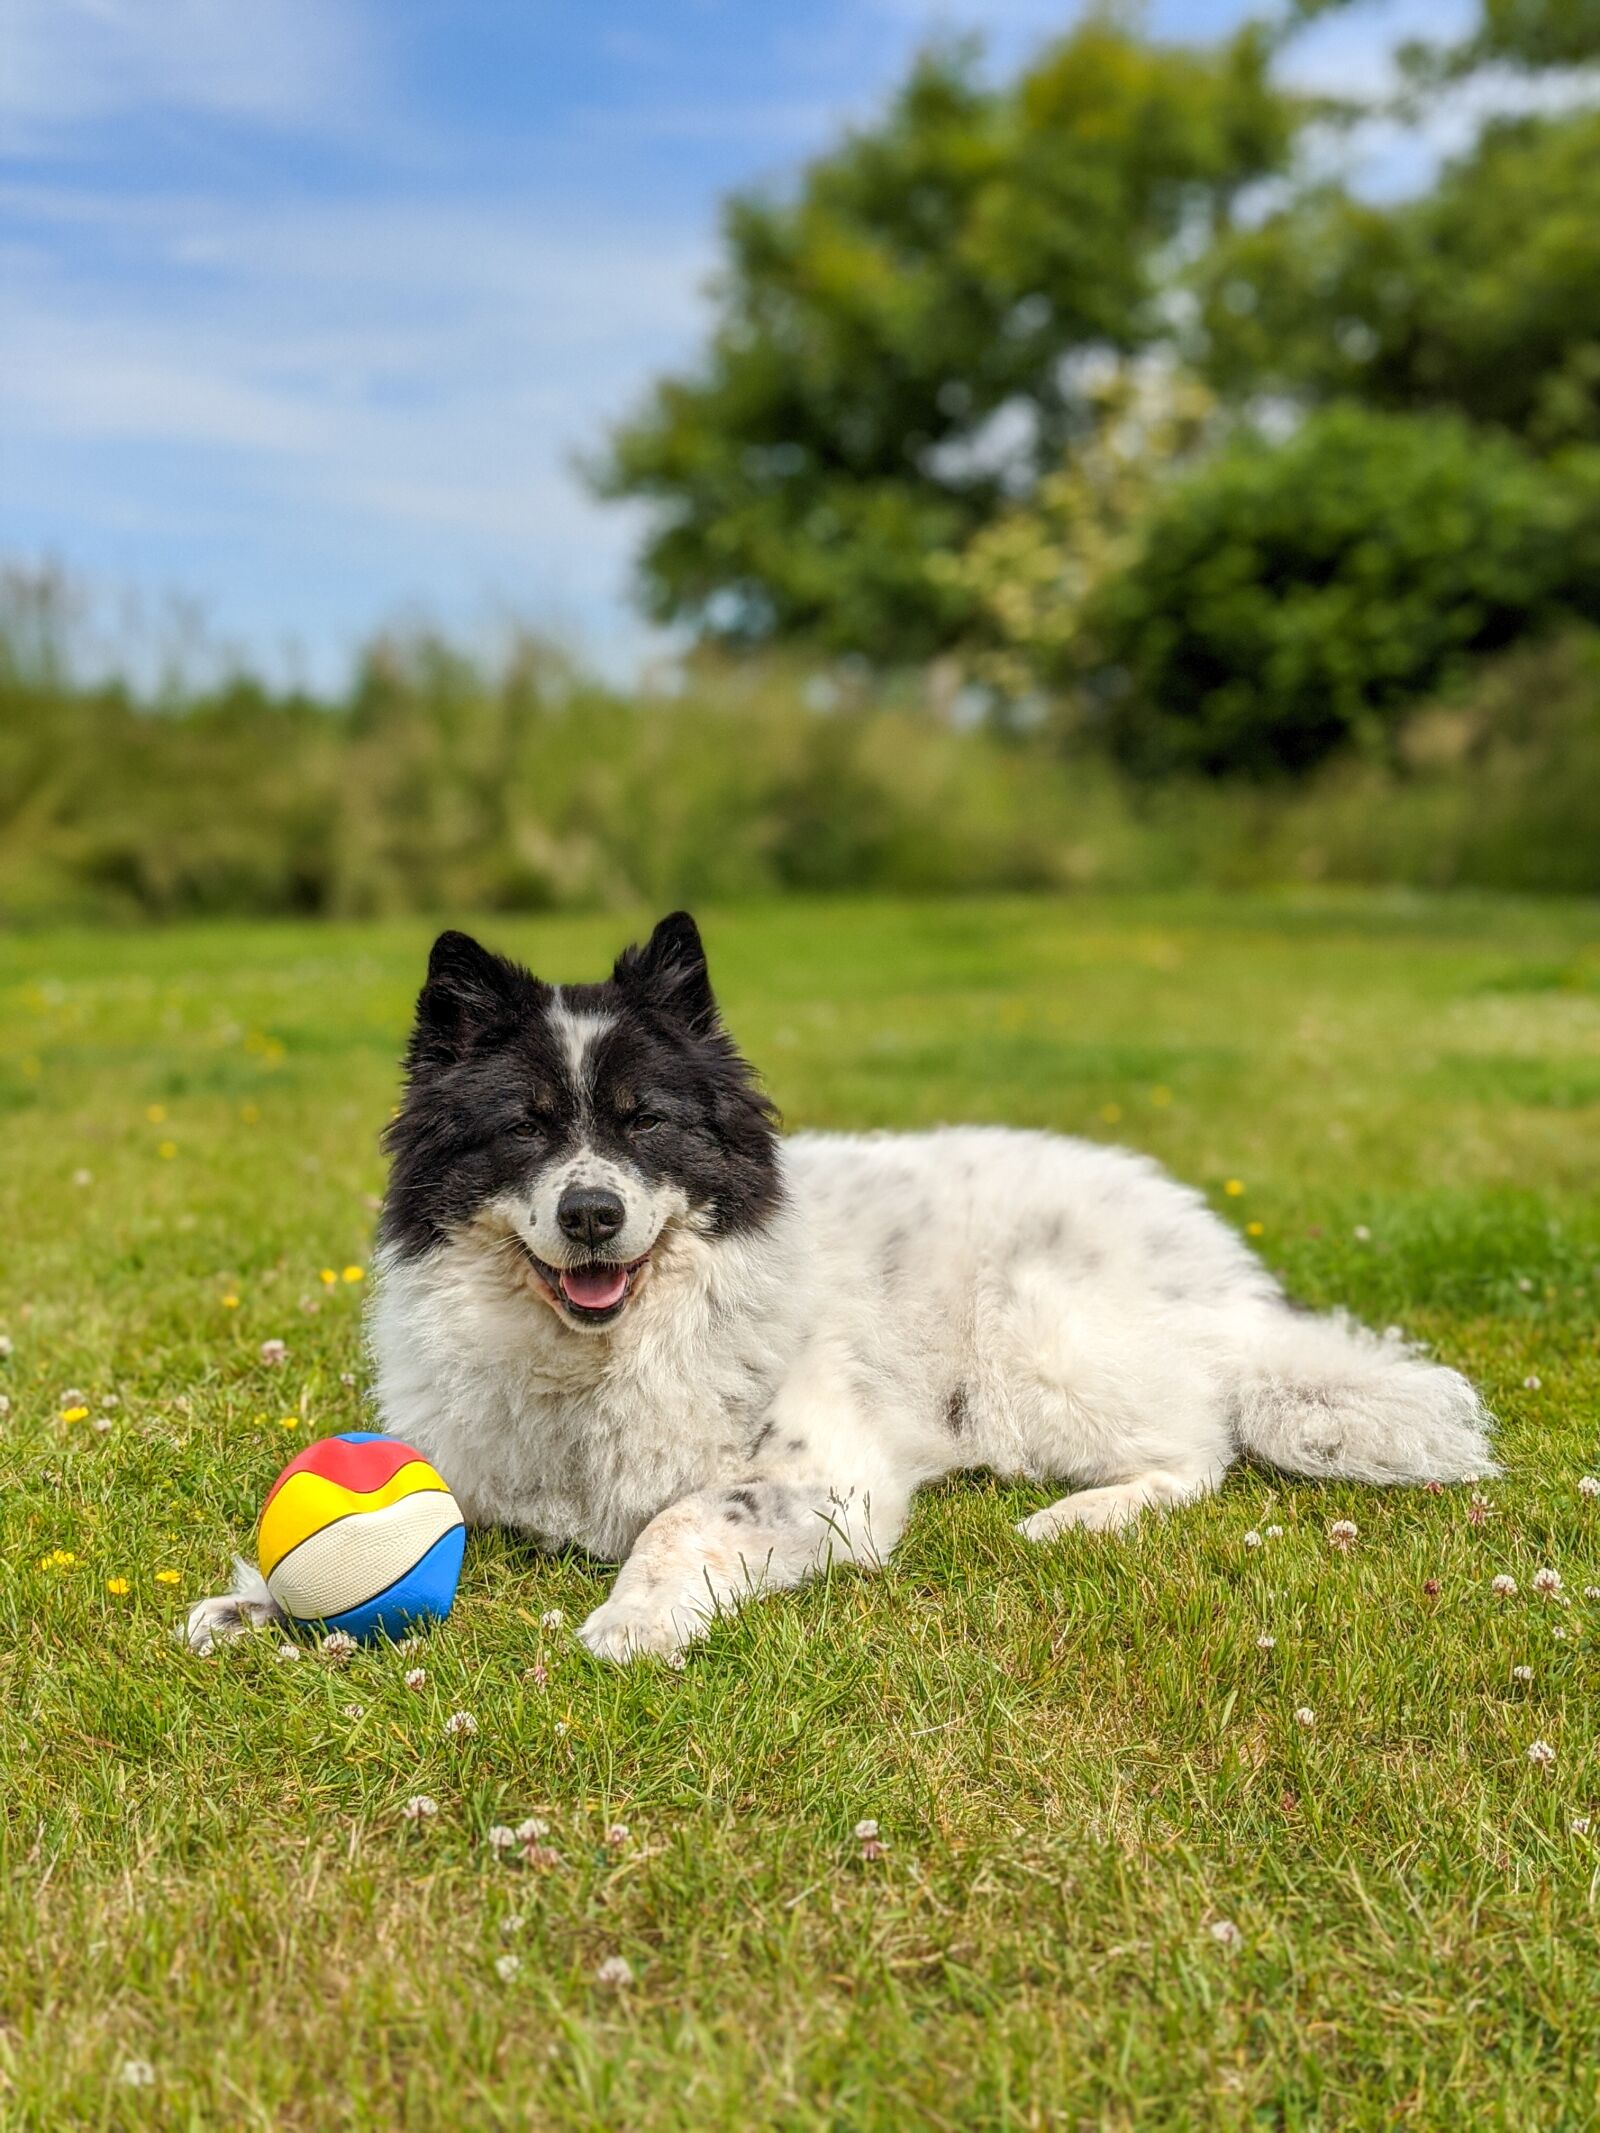 Google Pixel 4 sample photo. Hund, dog, happy dog photography